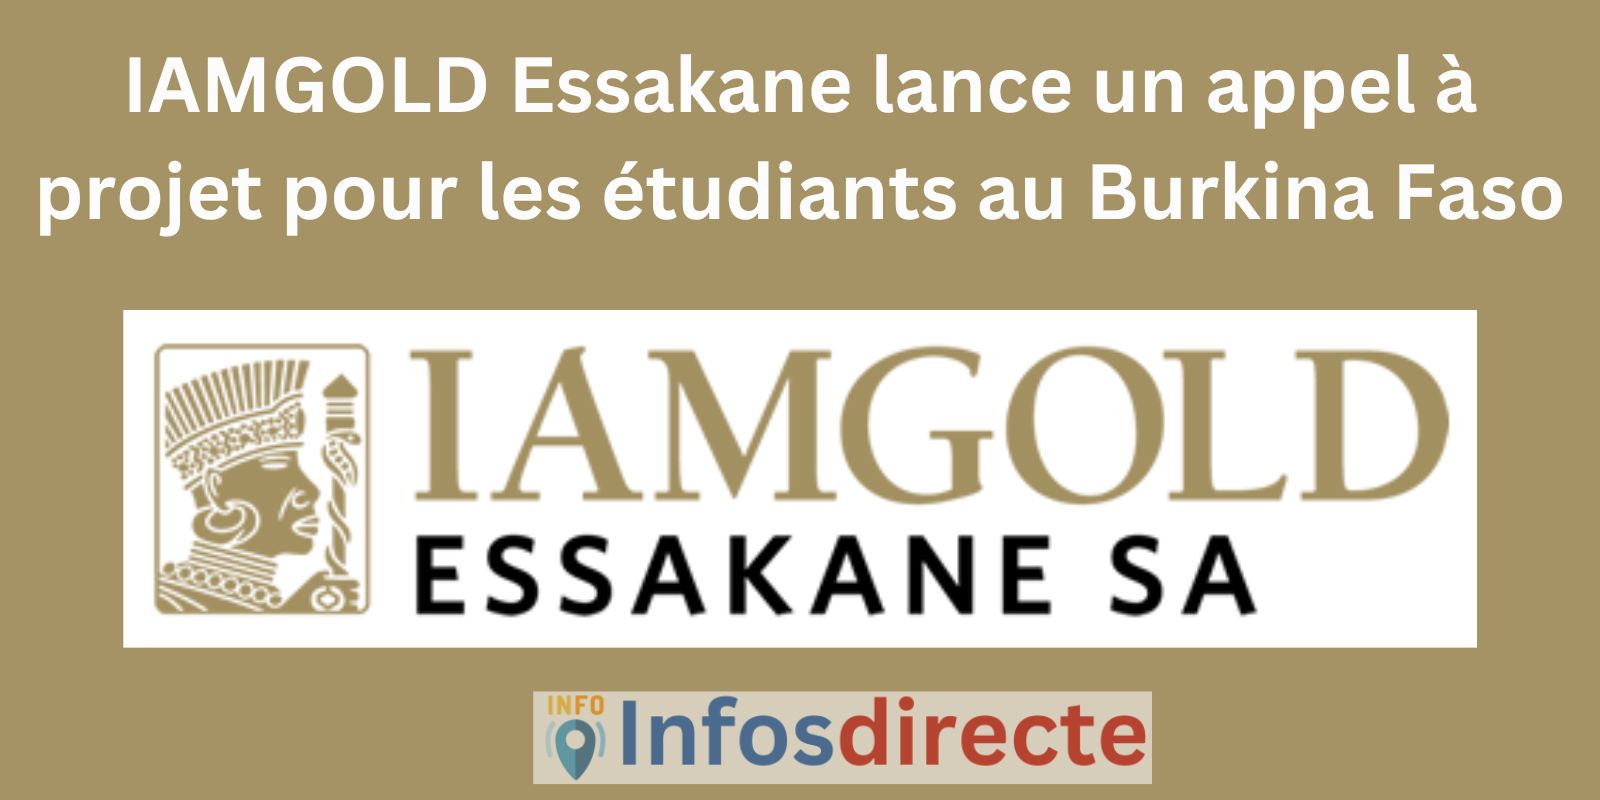 IAMGOLD Essakane lance un appel à projet pour les étudiants au Burkina Faso